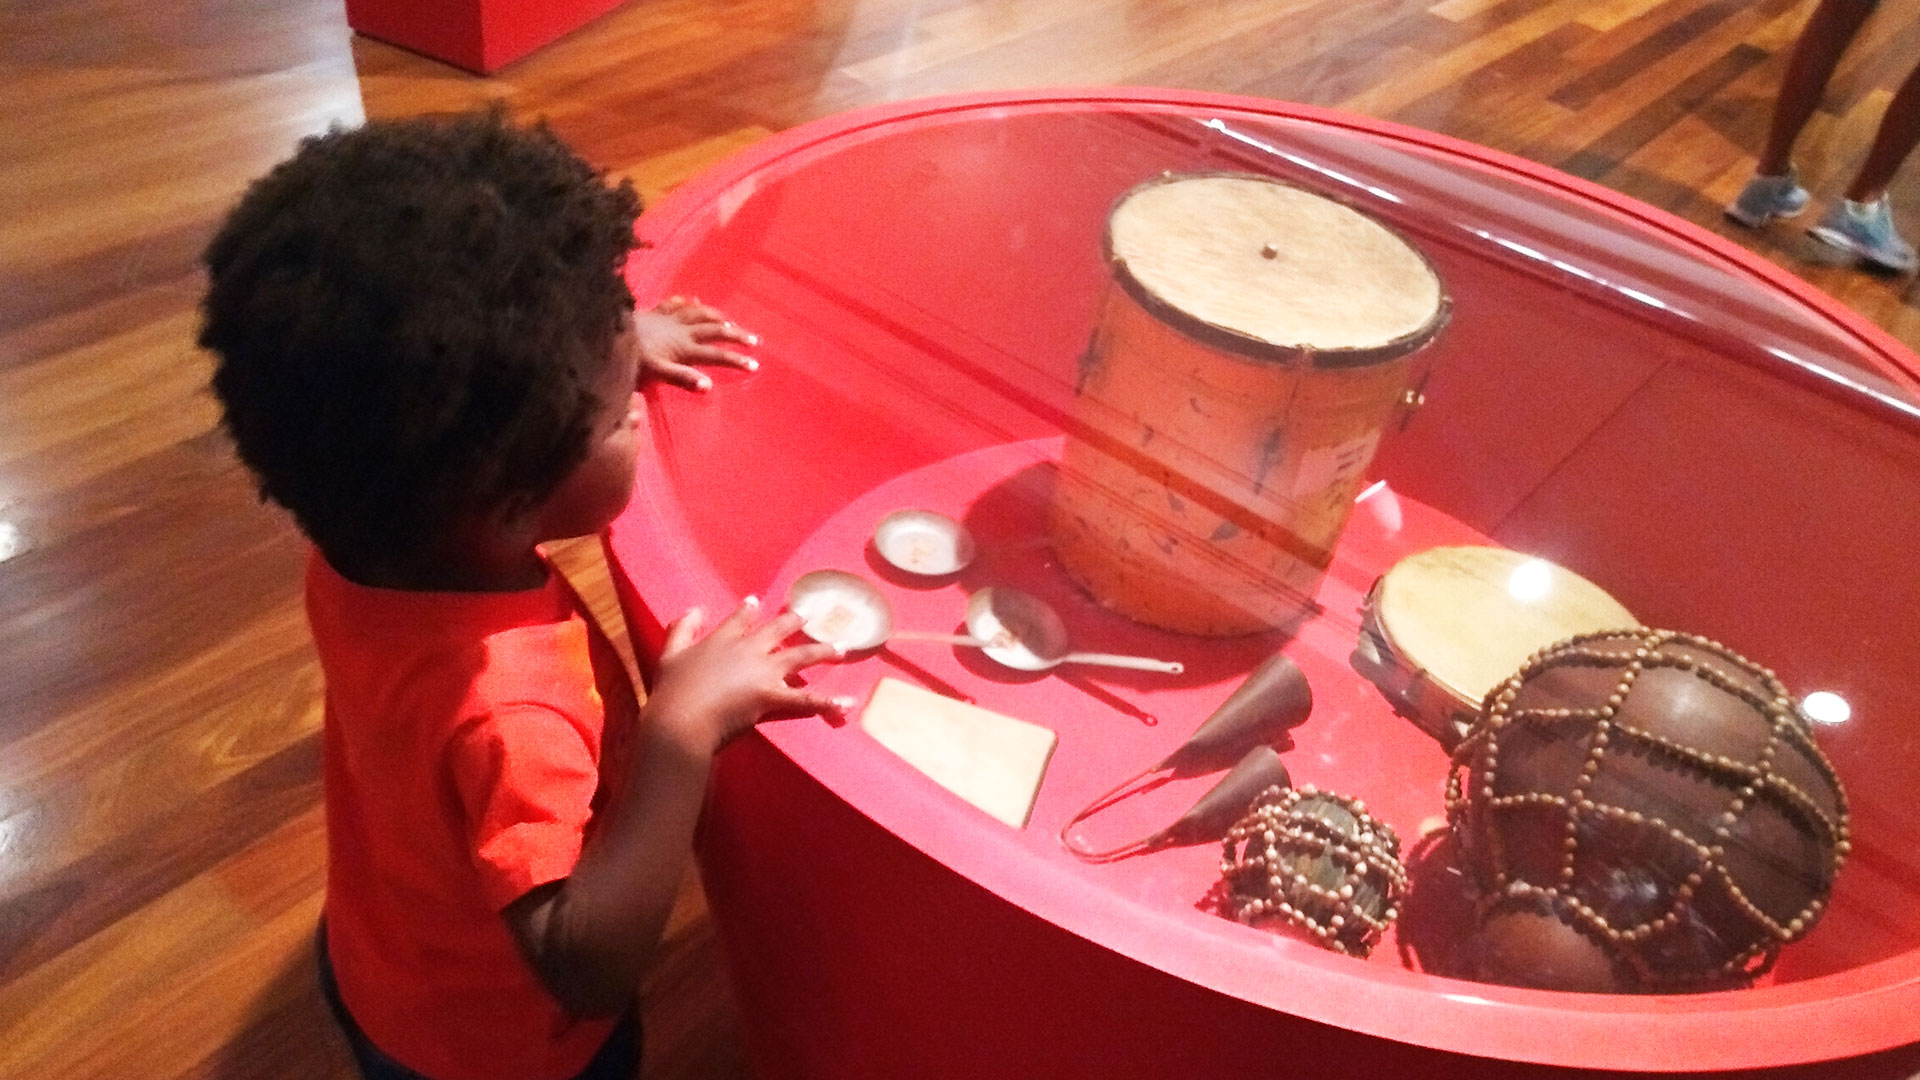 Menino negro explorando objetos de exposição afro-brasileira: instrumentos musicais como agogô, pandeiro e xequerê dispostos em uma mesa vermelha com tampo de vidro